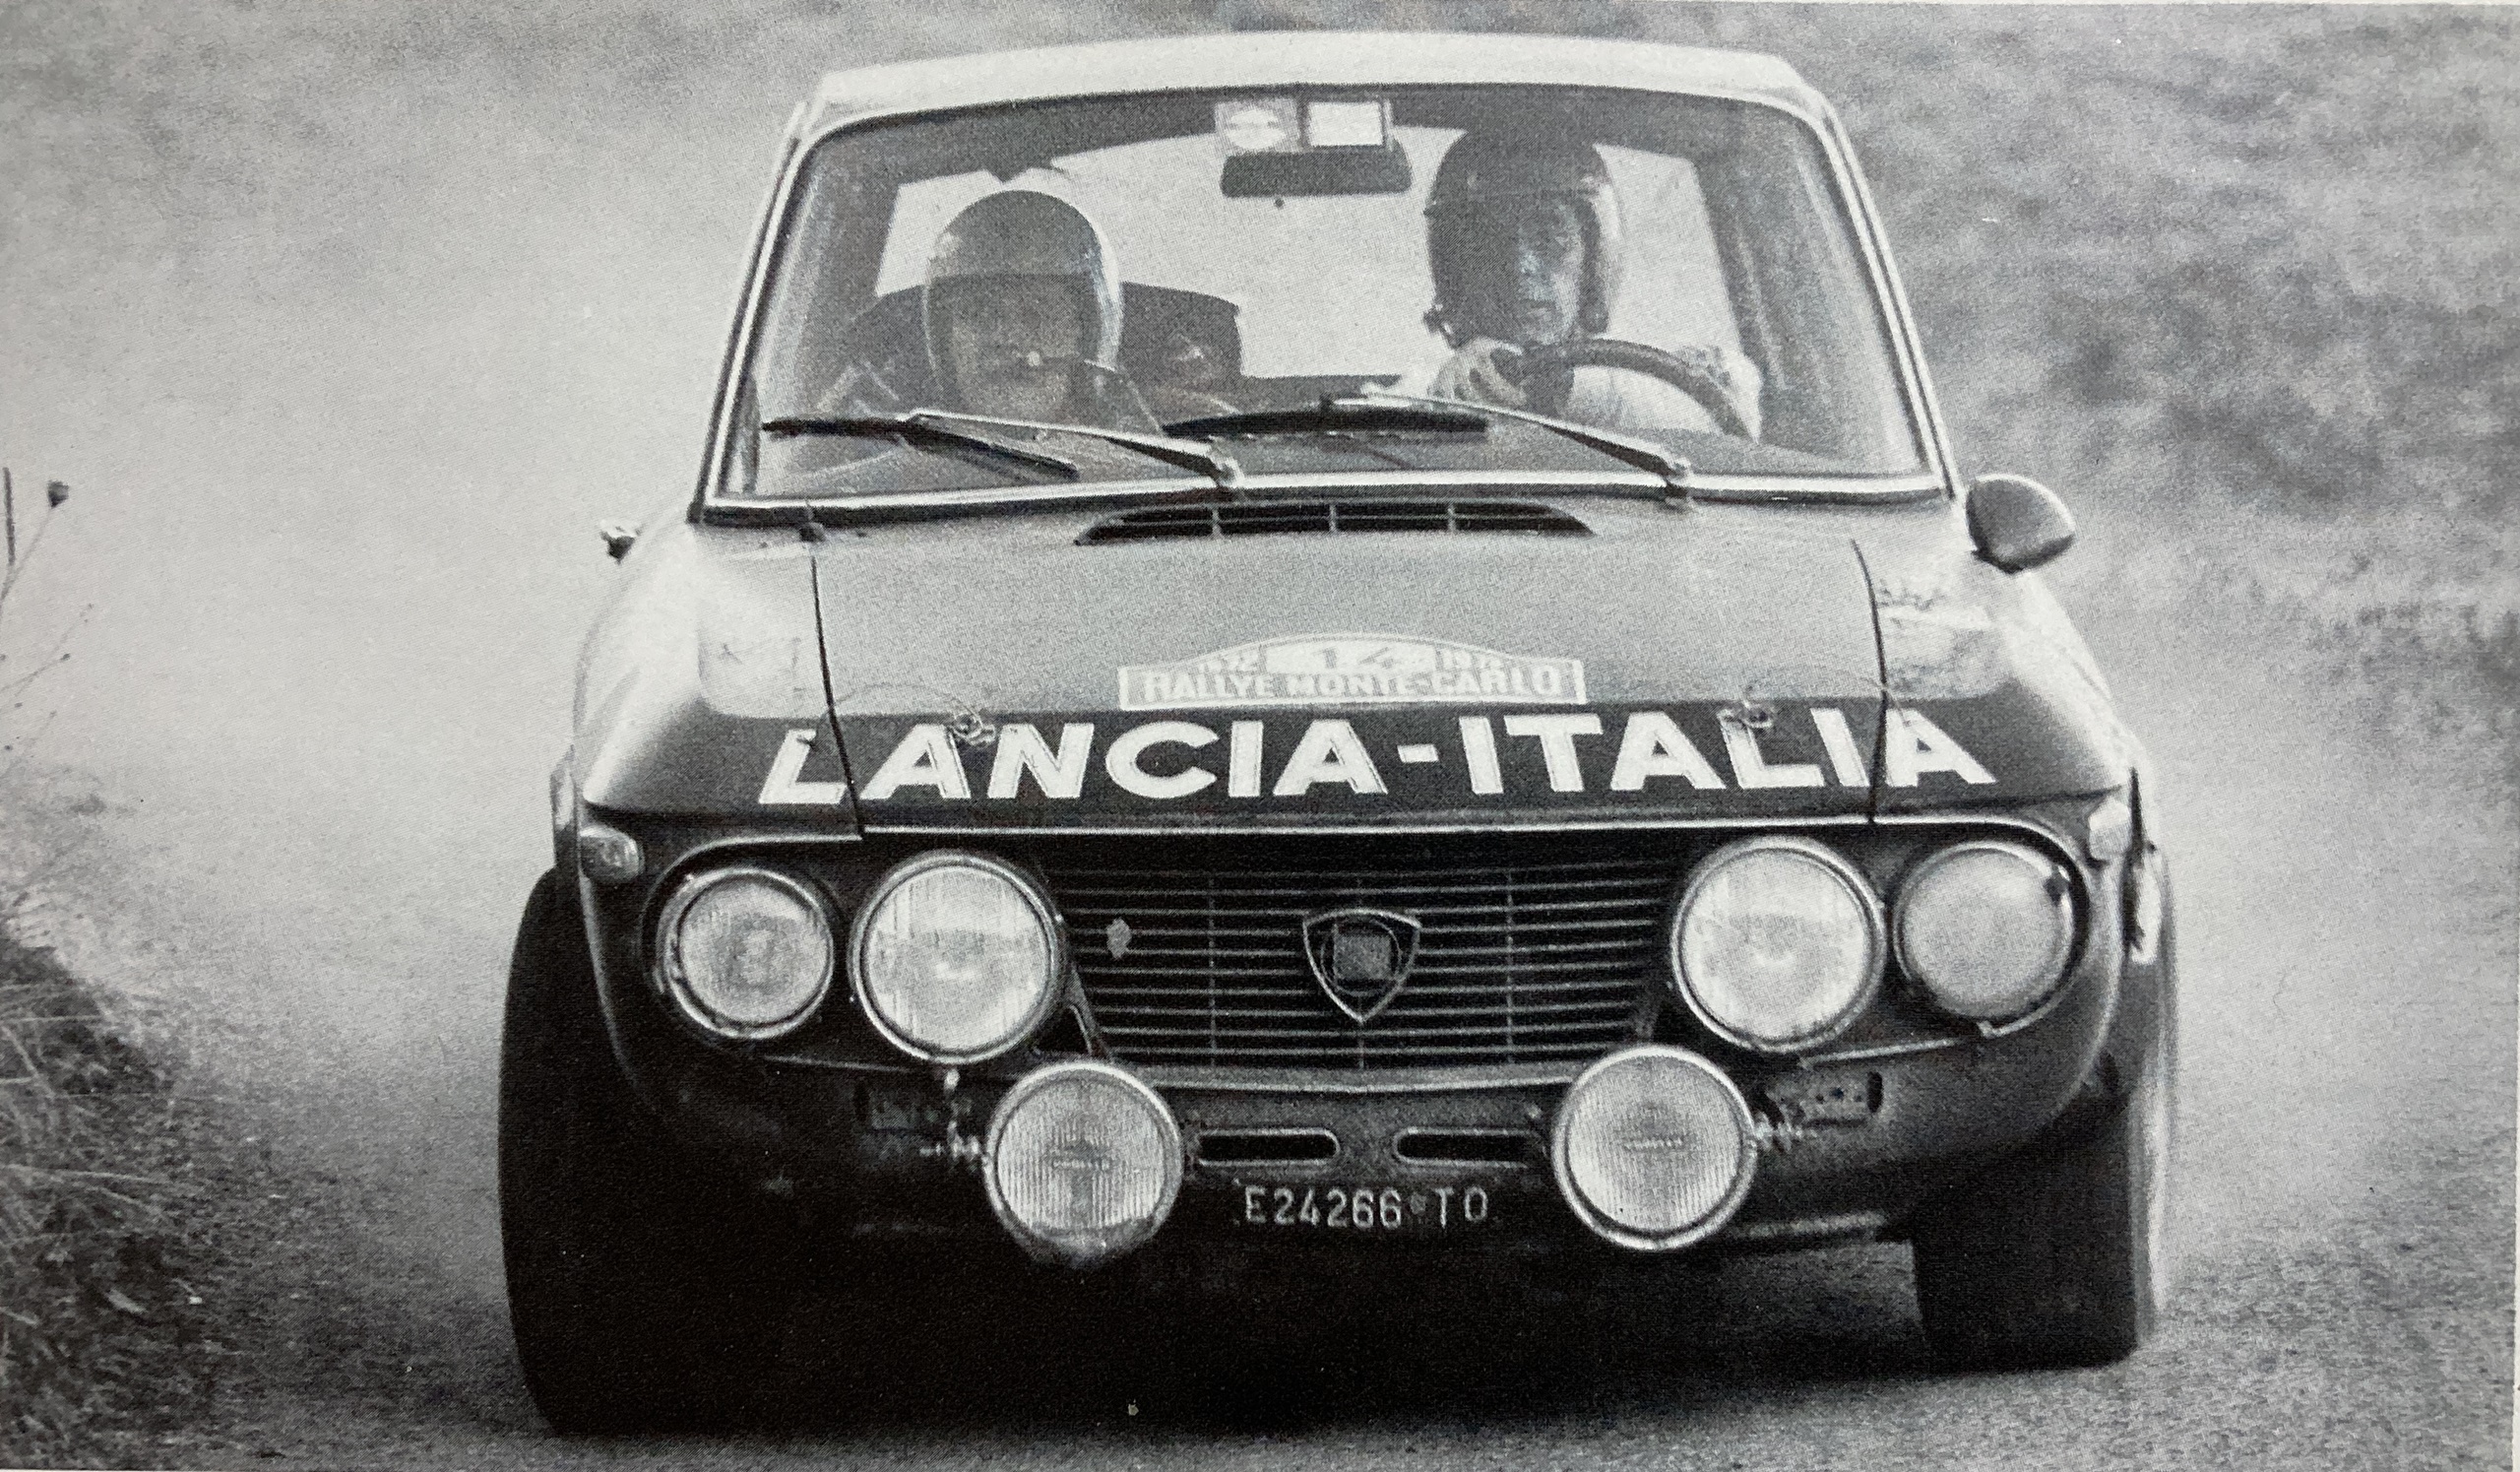 Sandro Munari, Fulvia 1,6 HF – Quelle: Brägger, Die Geschichte der Rallye Monte Carlo, Edition Scriptum 1988